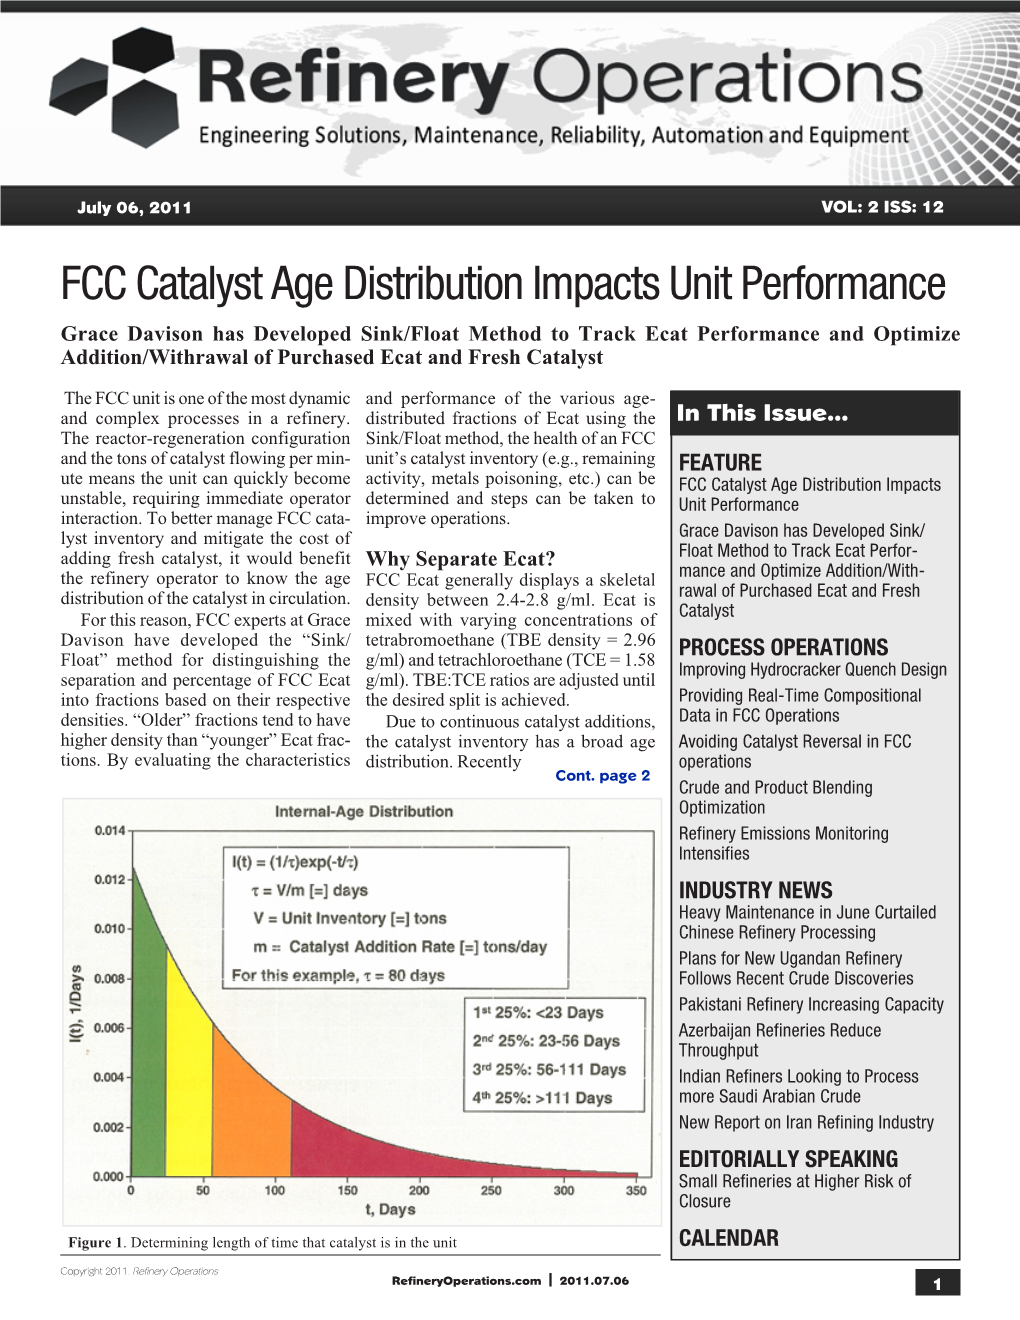 FCC Catalyst Age Distribution Impacts Unit Performance